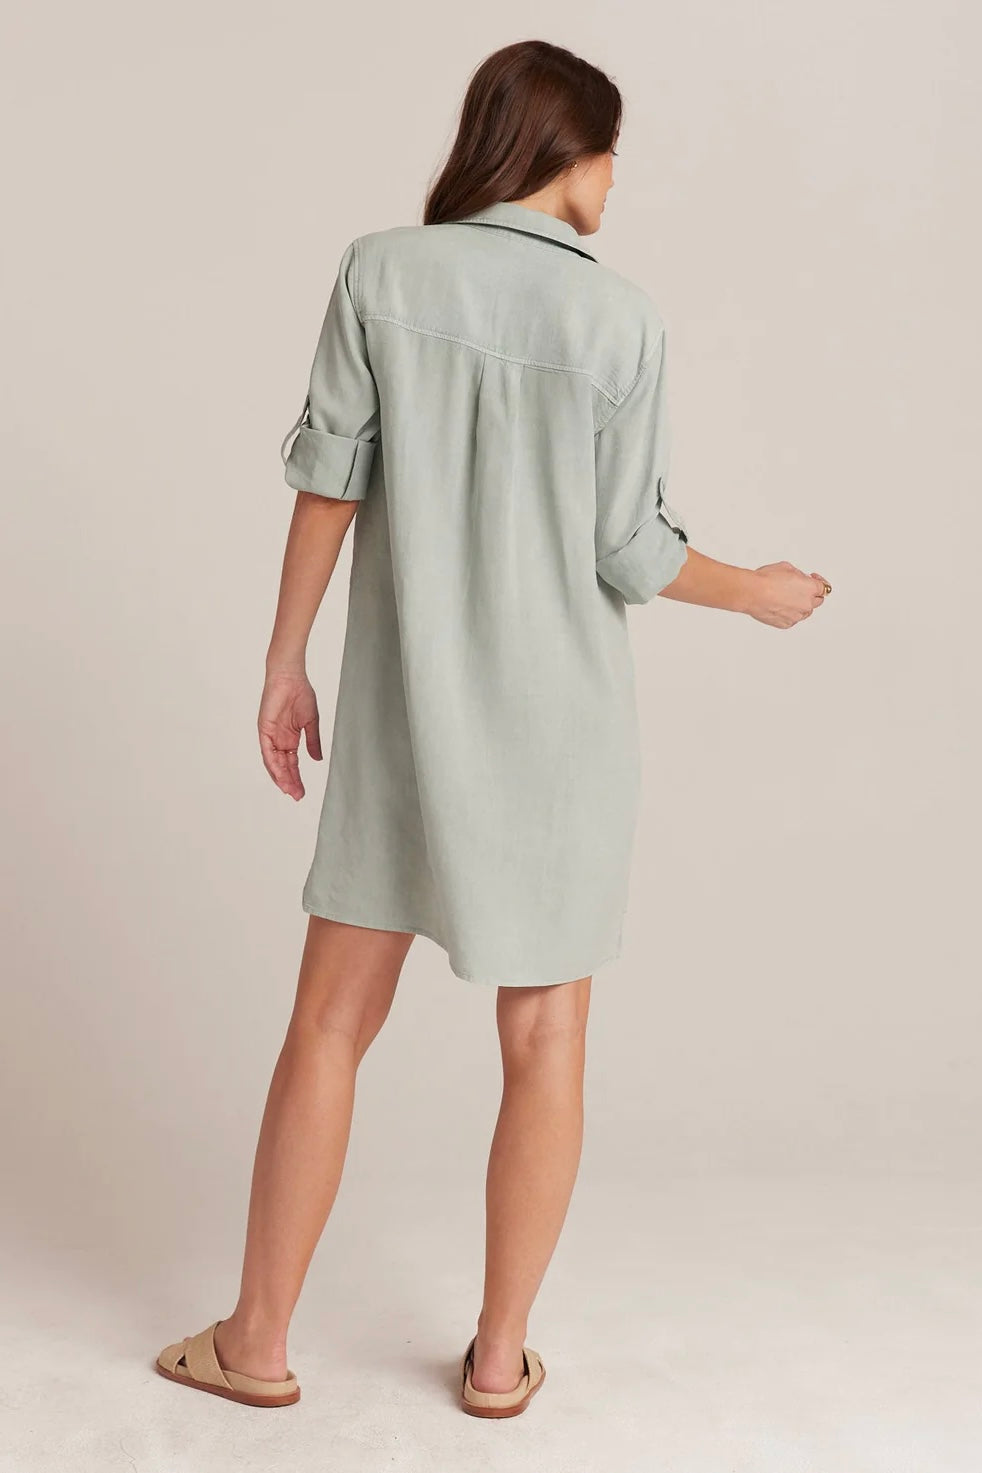 Bella Dahl - Long Sleeve A-line Dress